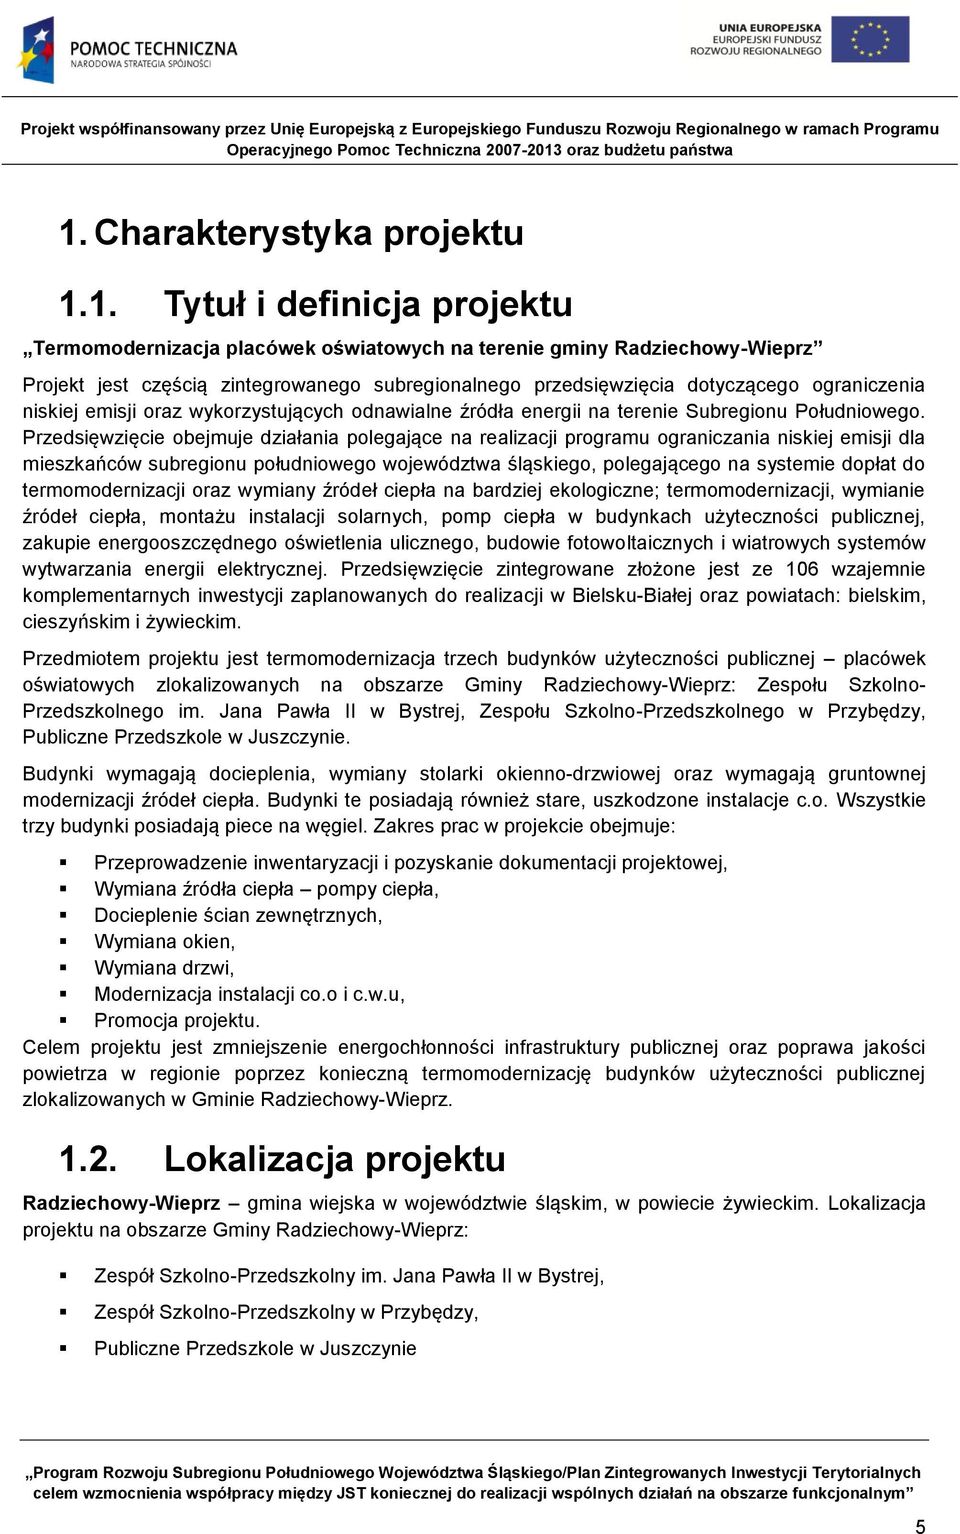 Przedsięwzięcie obejmuje działania polegające na realizacji programu ograniczania niskiej emisji dla mieszkańców subregionu południowego województwa śląskiego, polegającego na systemie dopłat do